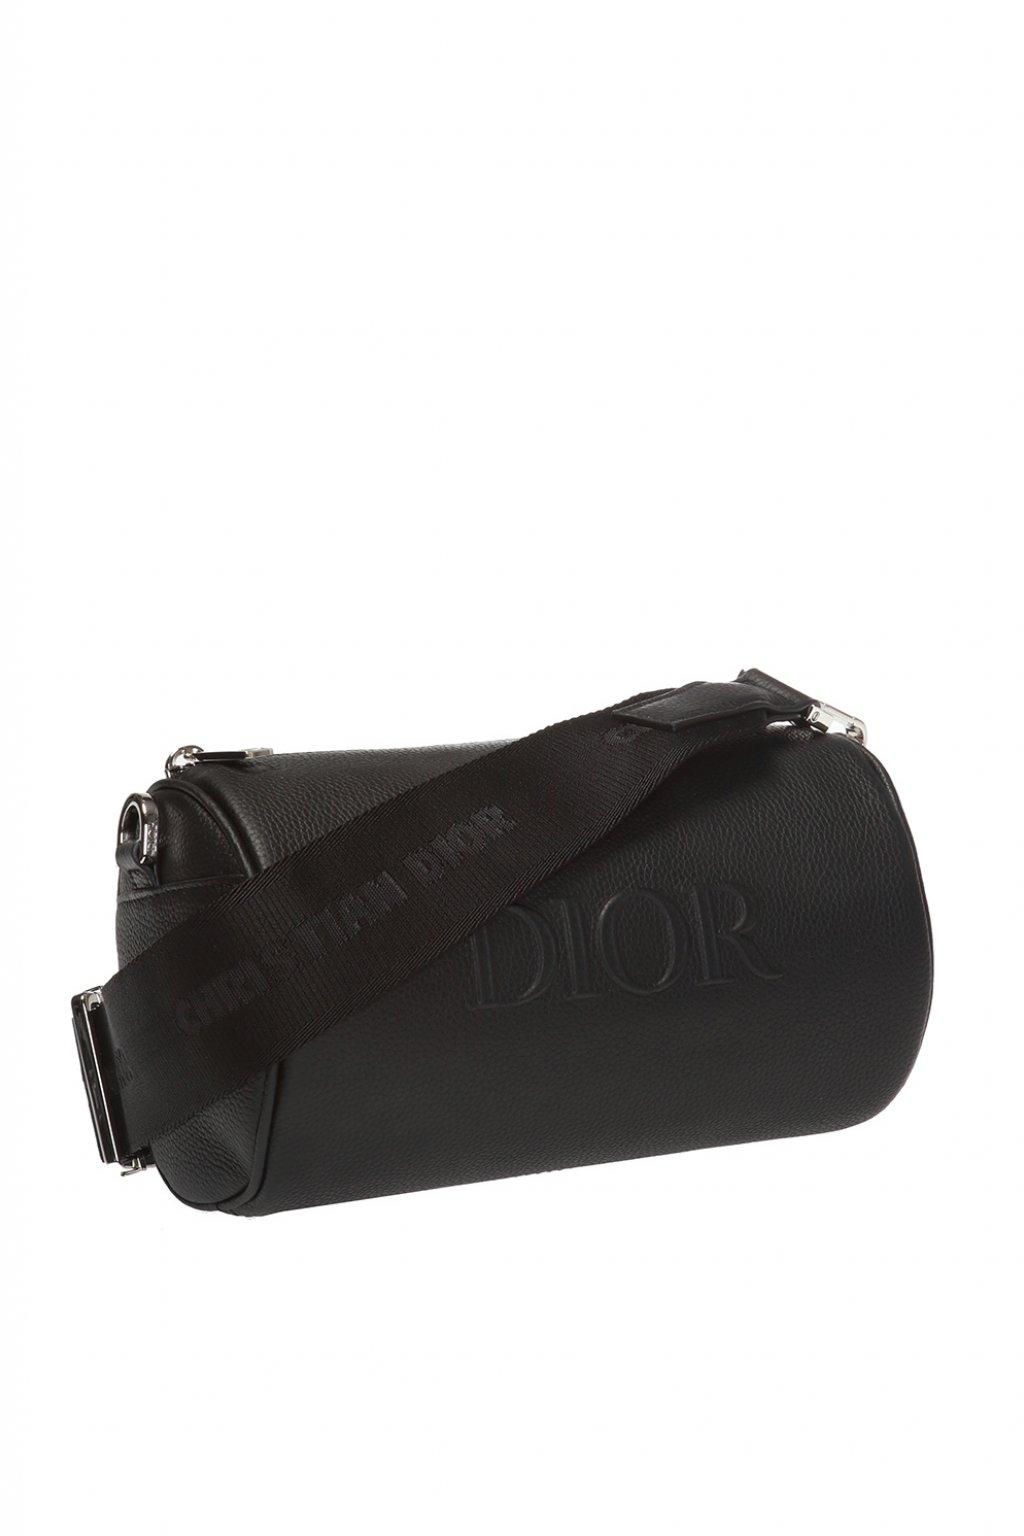 dior roller pouch